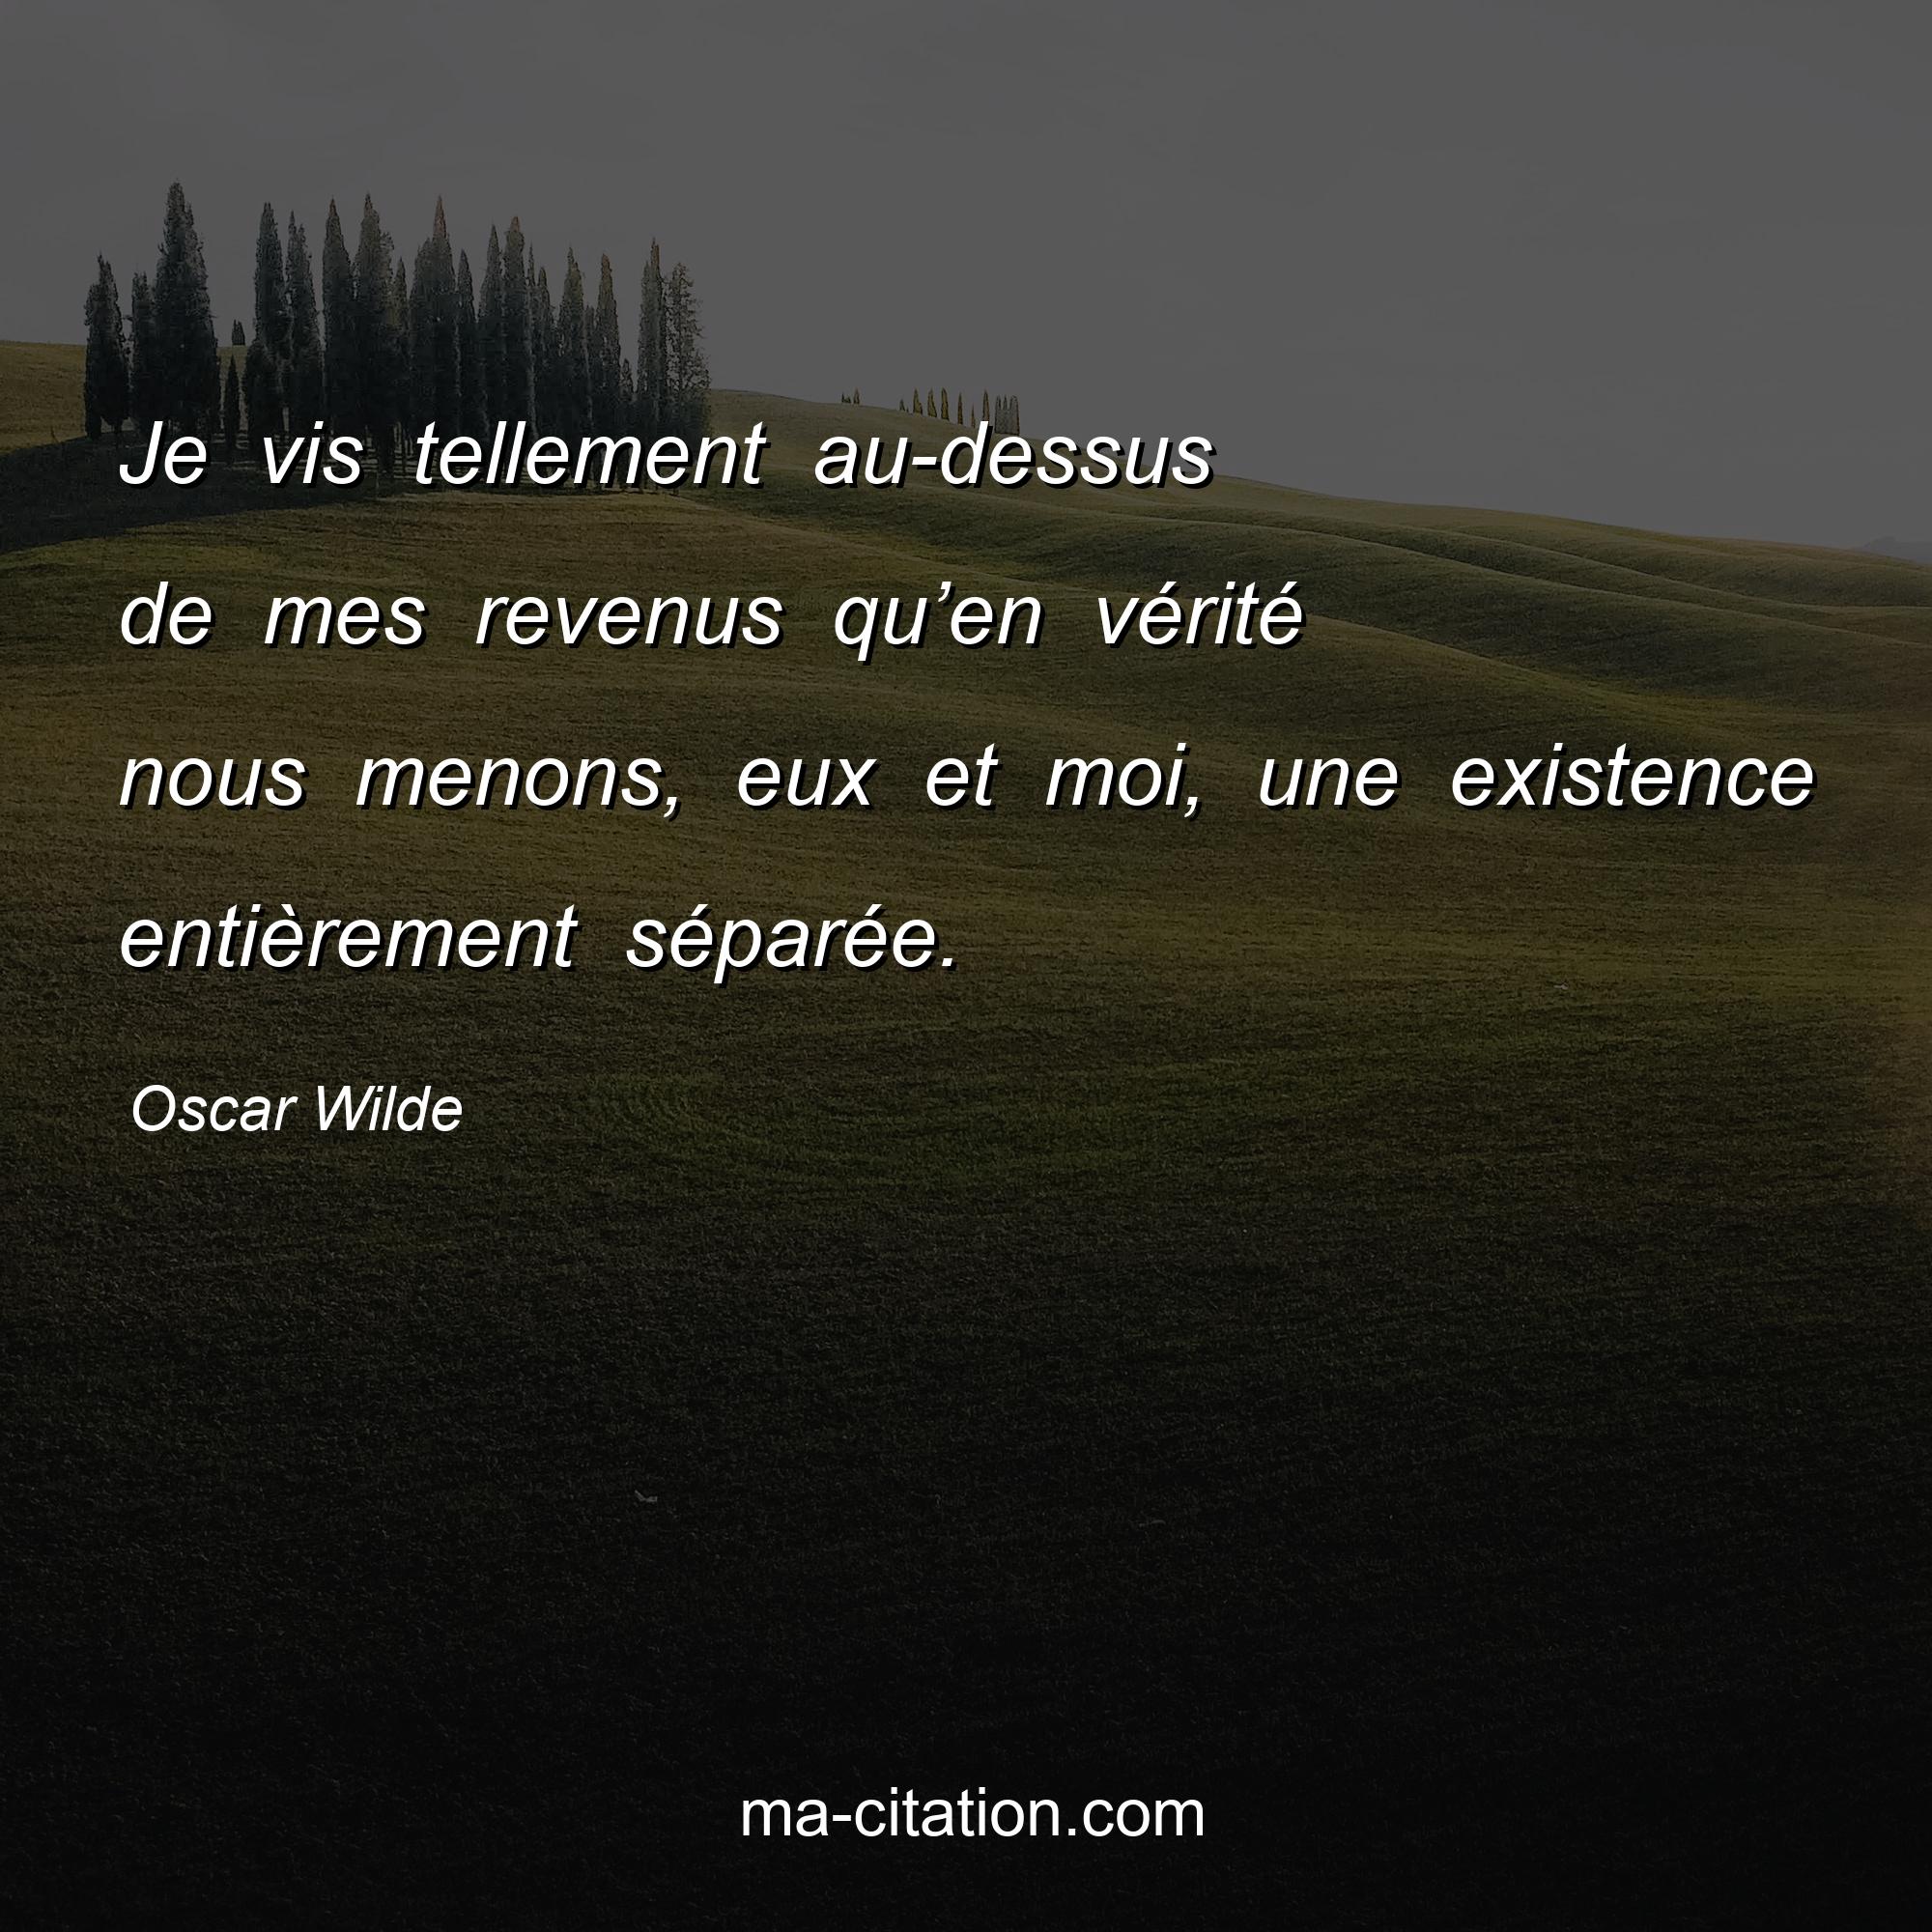 Oscar Wilde : Je vis tellement au-dessus de mes revenus qu’en vérité nous menons, eux et moi, une existence entièrement séparée.